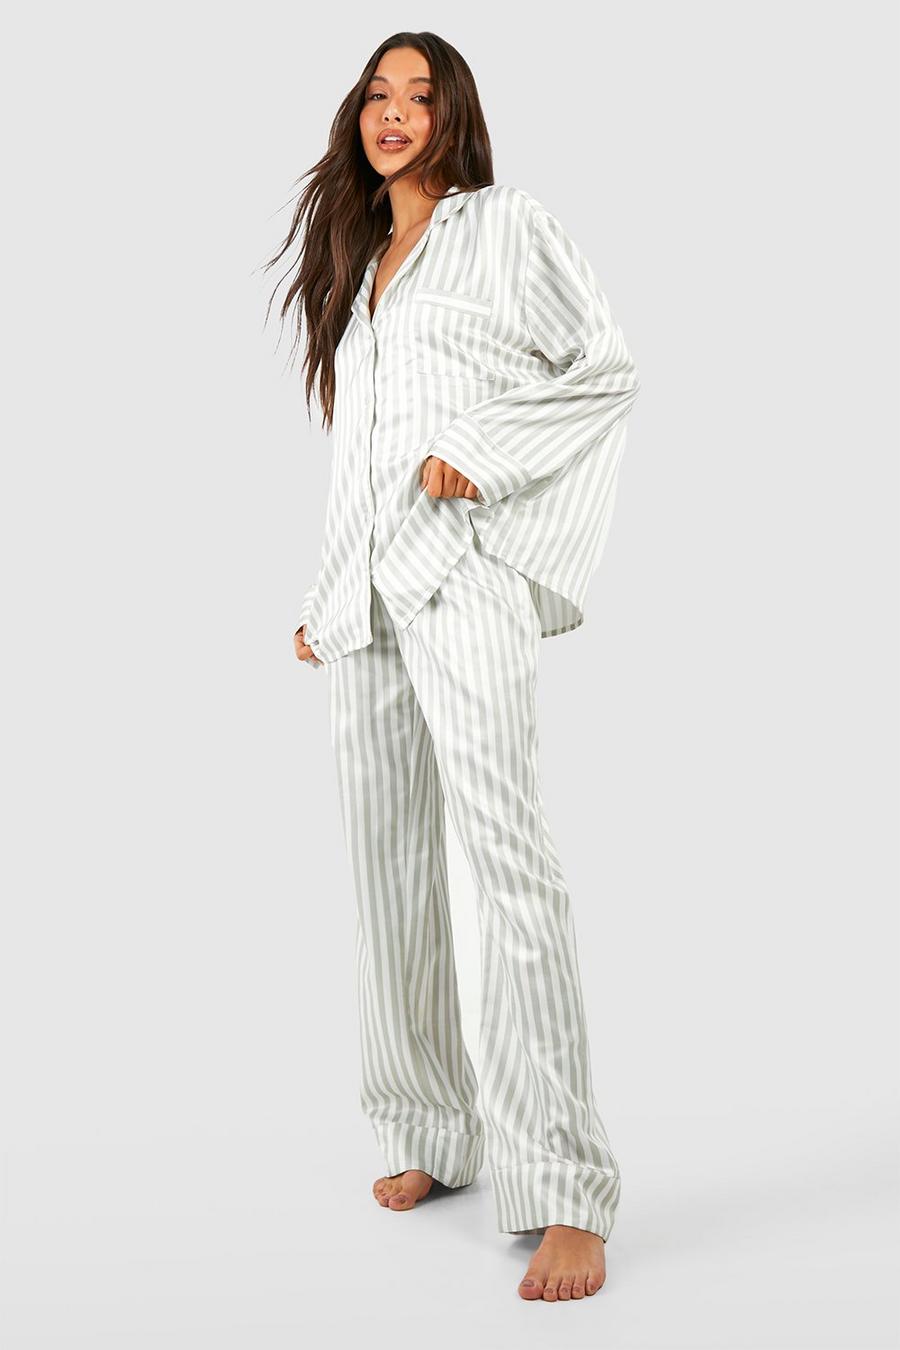 Silky Pajama Sets, Satin Pajamas